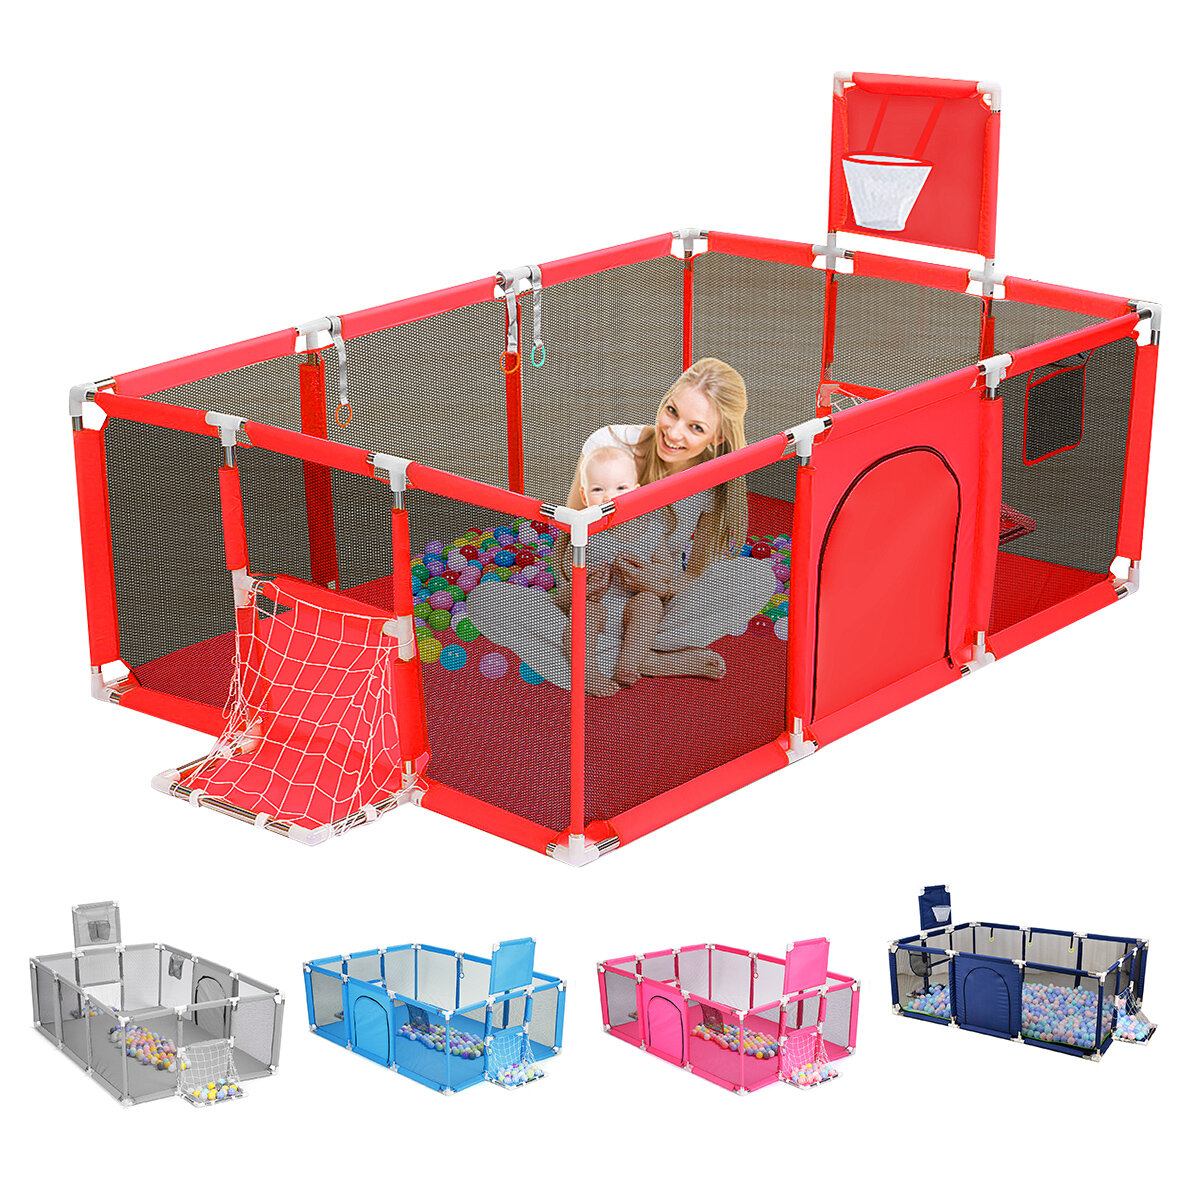 3 in 1 babybox Interactieve veiligheid Indoor Gate Play Yards Tent Basketbalveld Kindermeubels voor kinderen Groot droog zwembad Speeltuin Park 0-6 jaar Hek